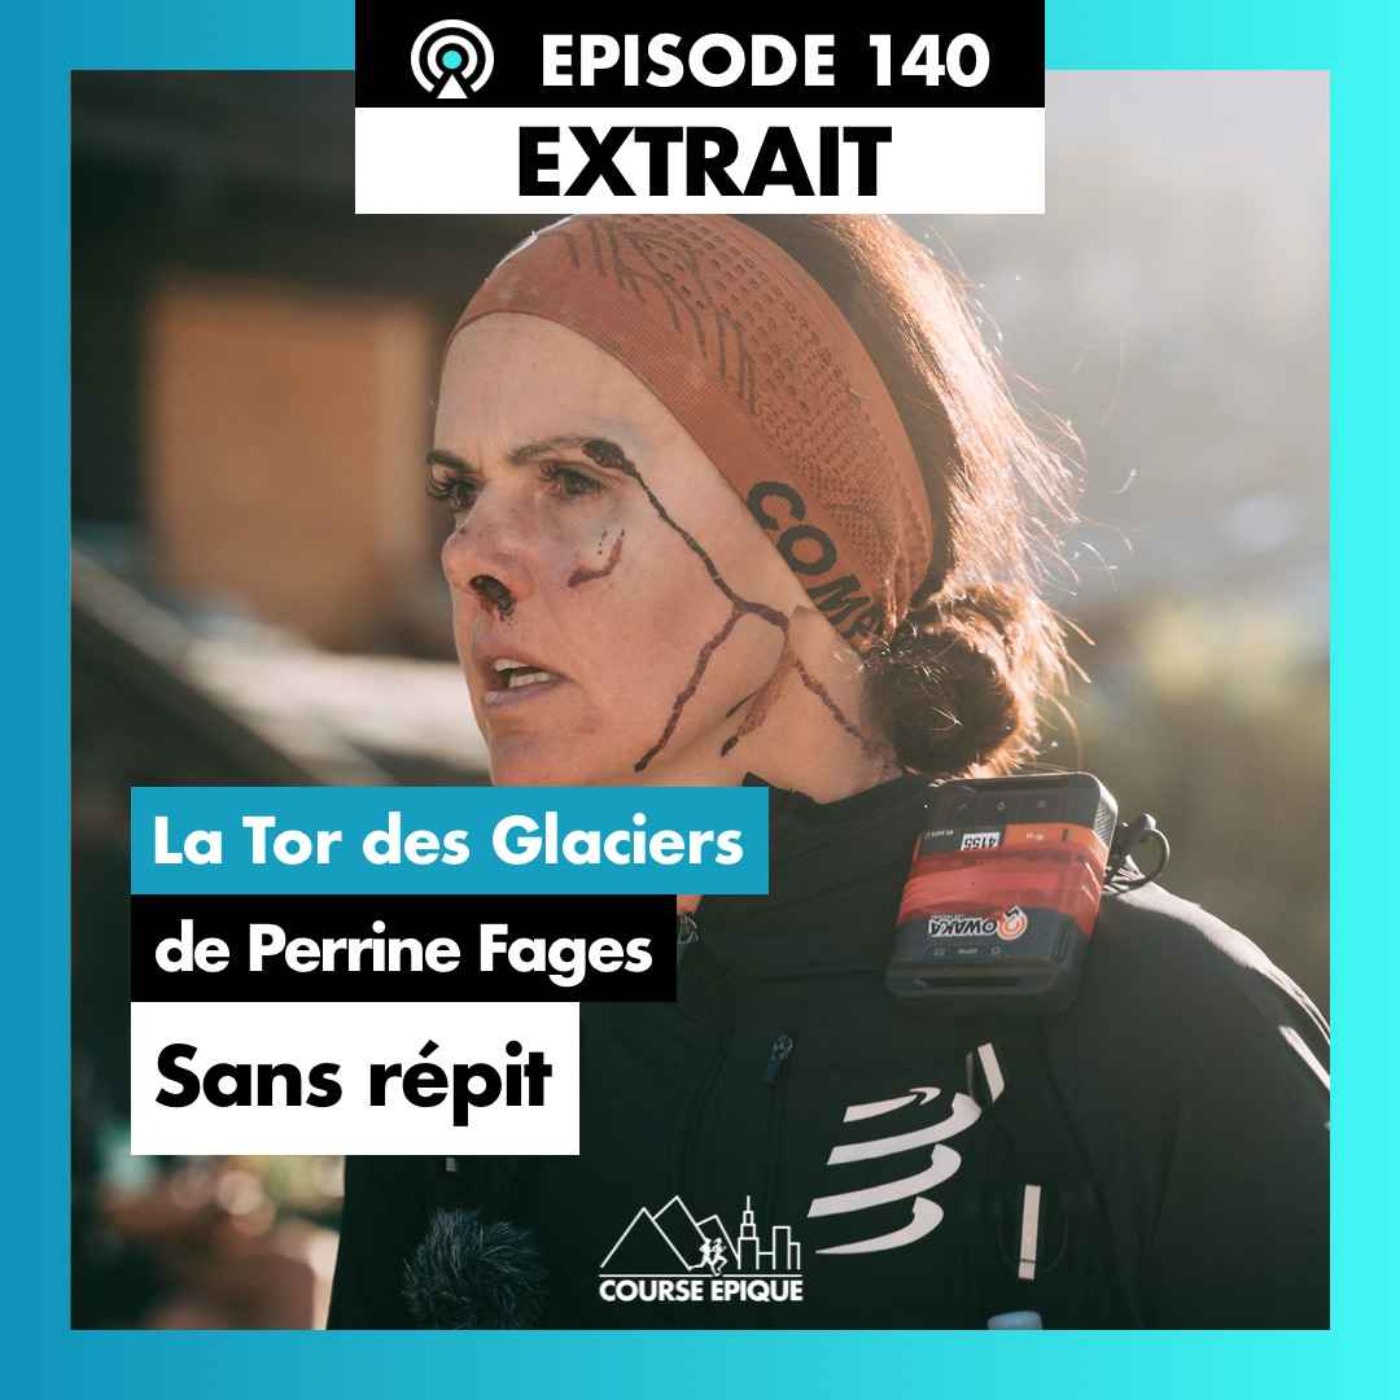 [EXTRAIT] Perrine Fages "A l'assaut d'un redoutable ultra-trail de 450km et 32000 mètres de D+" - Le Tor des Glaciers